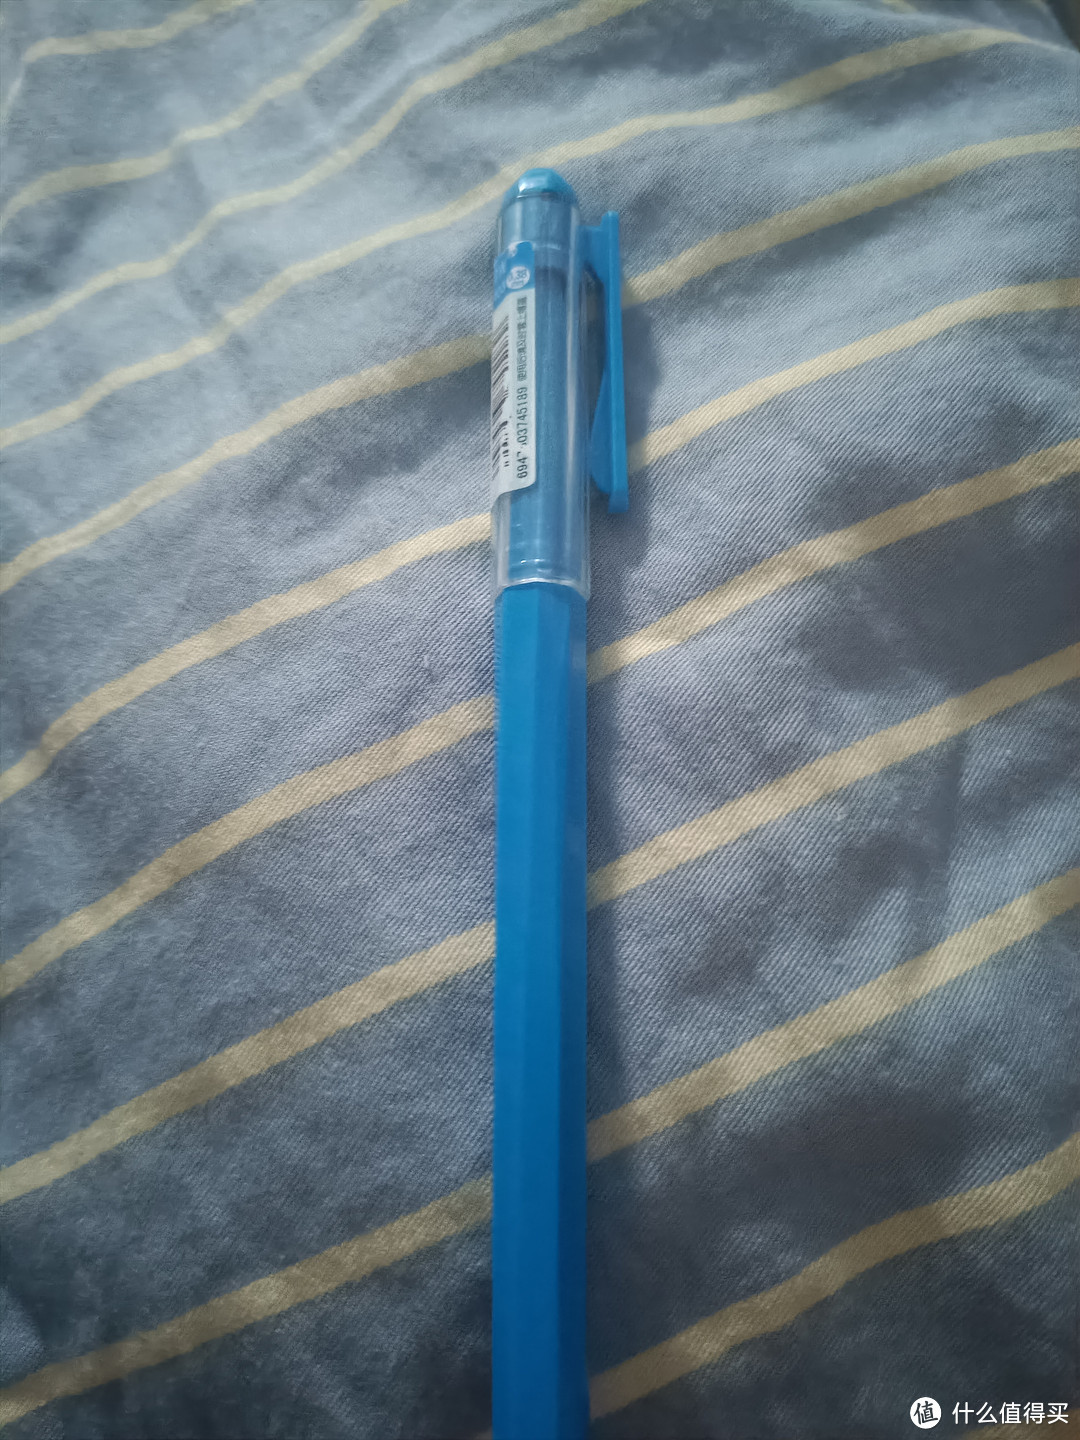 秀秀，我的开学新装备之超级好用的蓝笔。